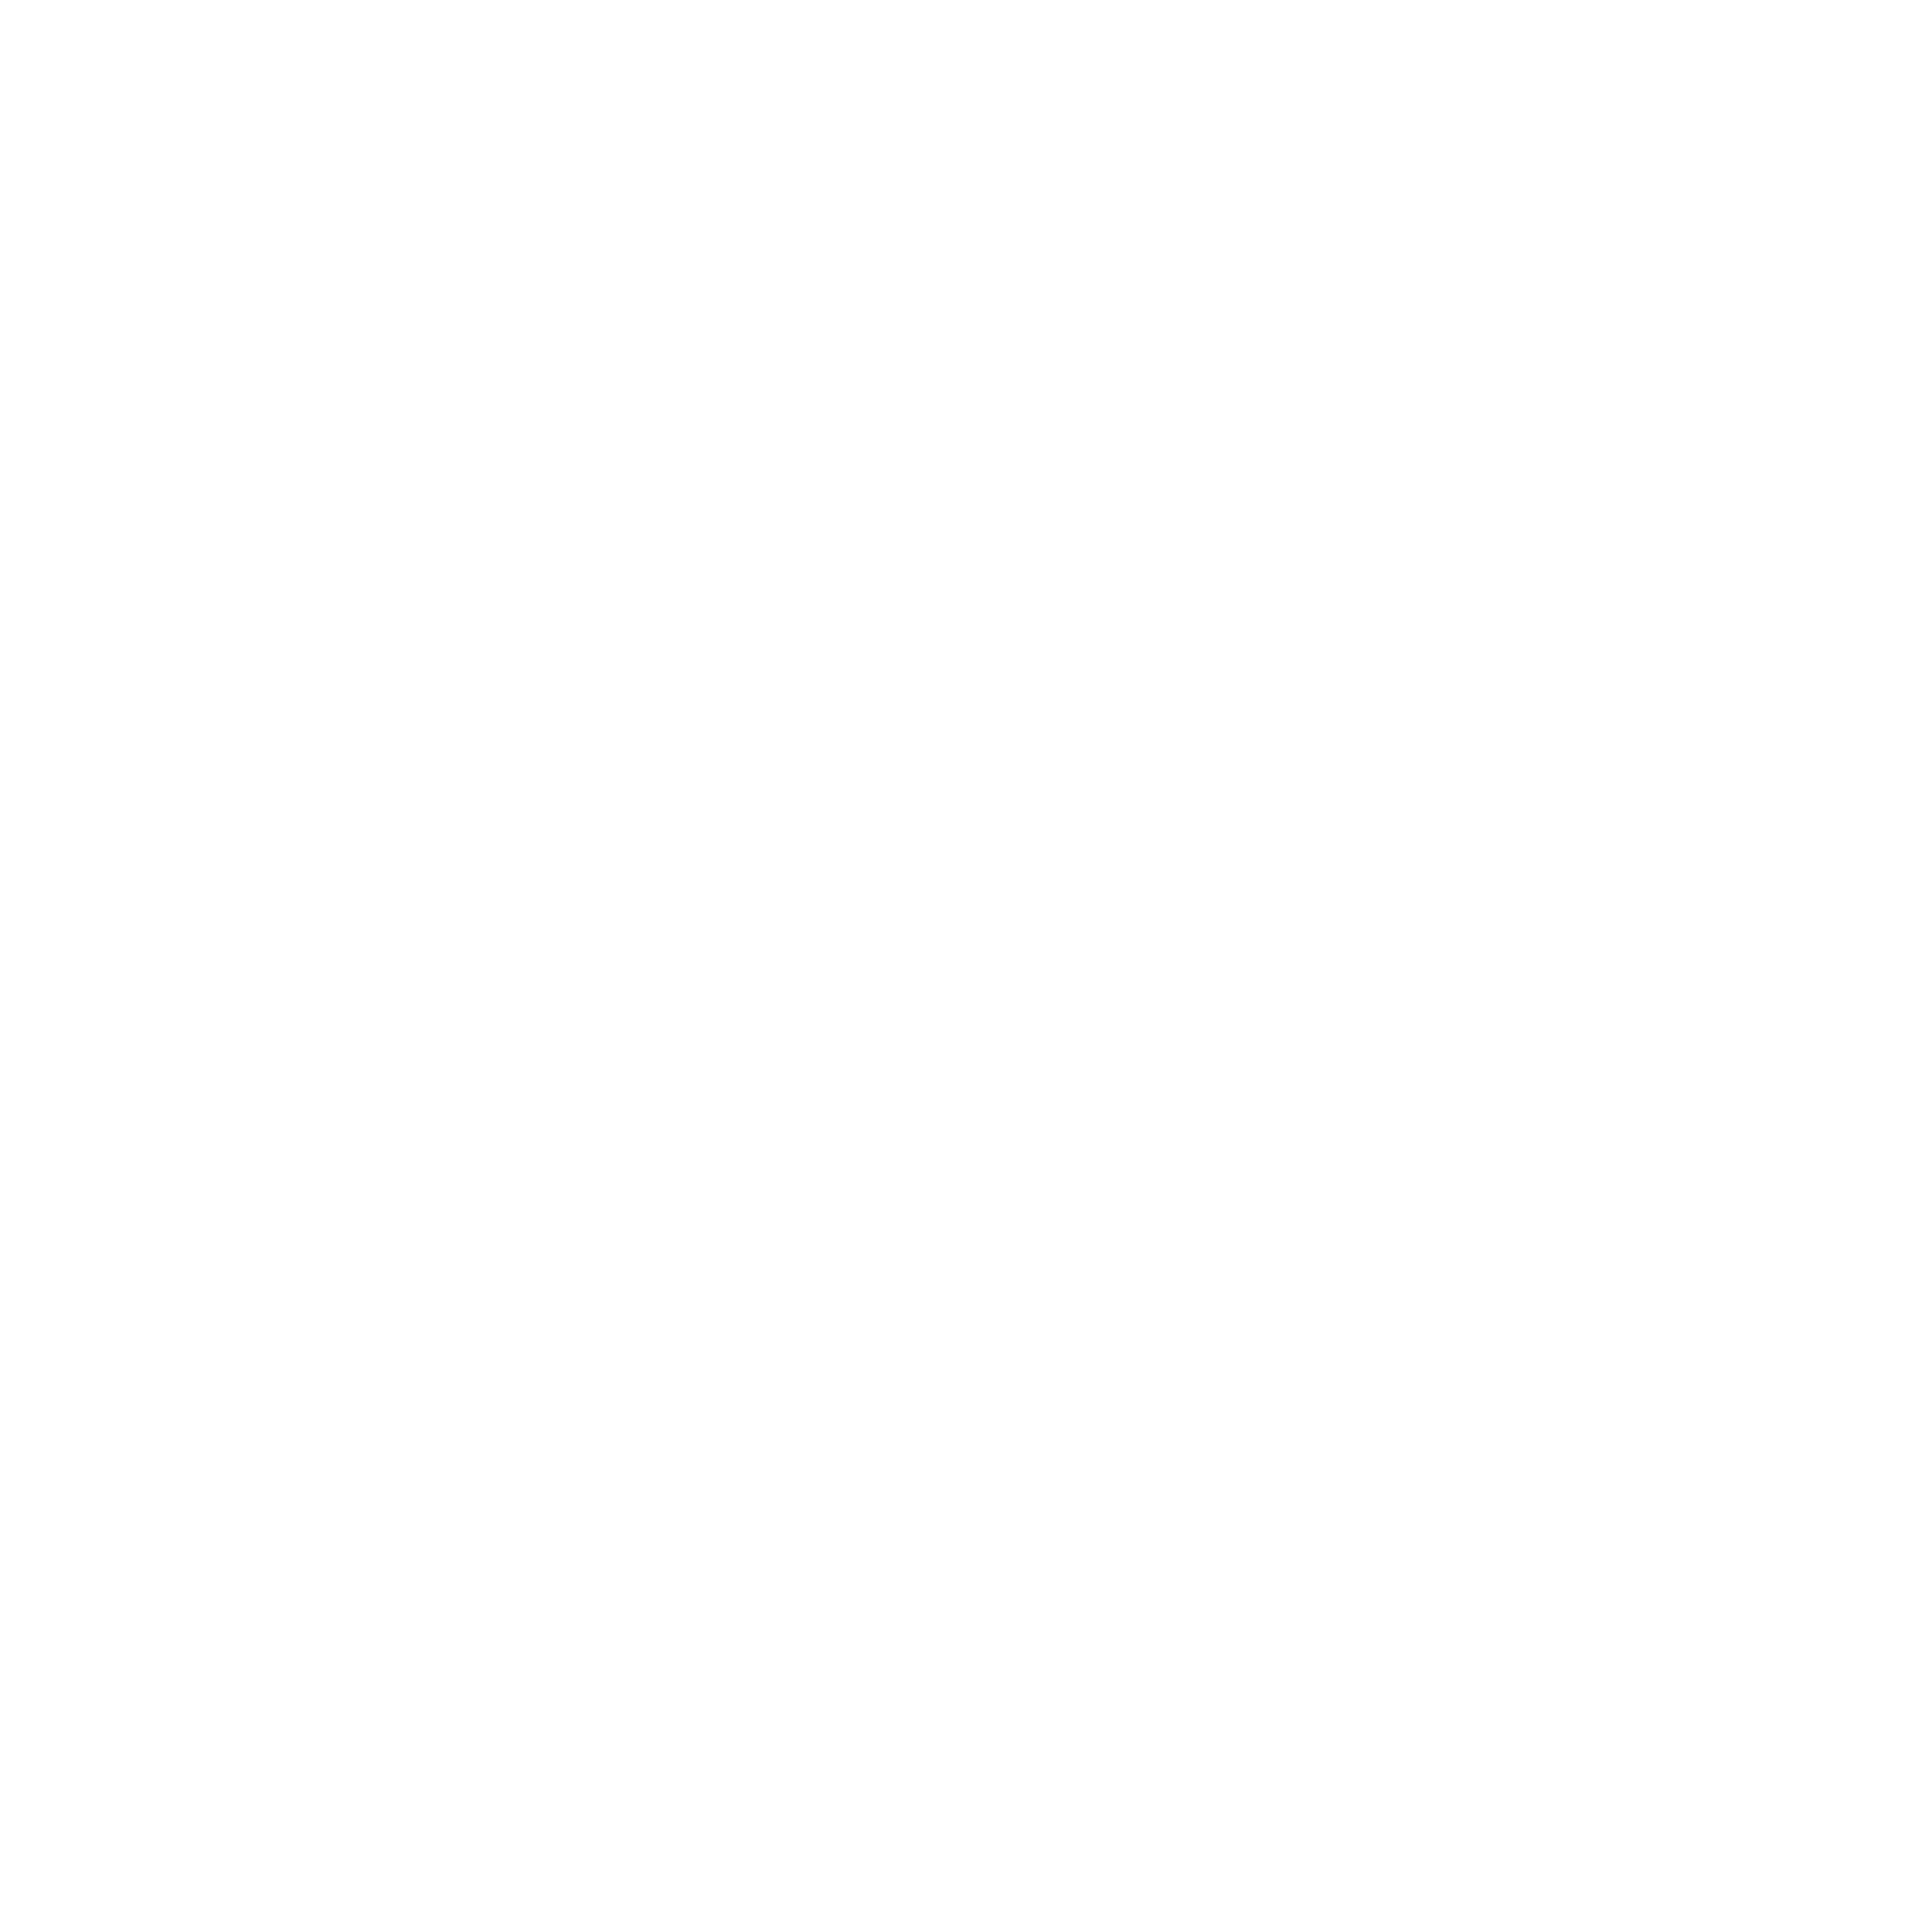 Bala Gopala